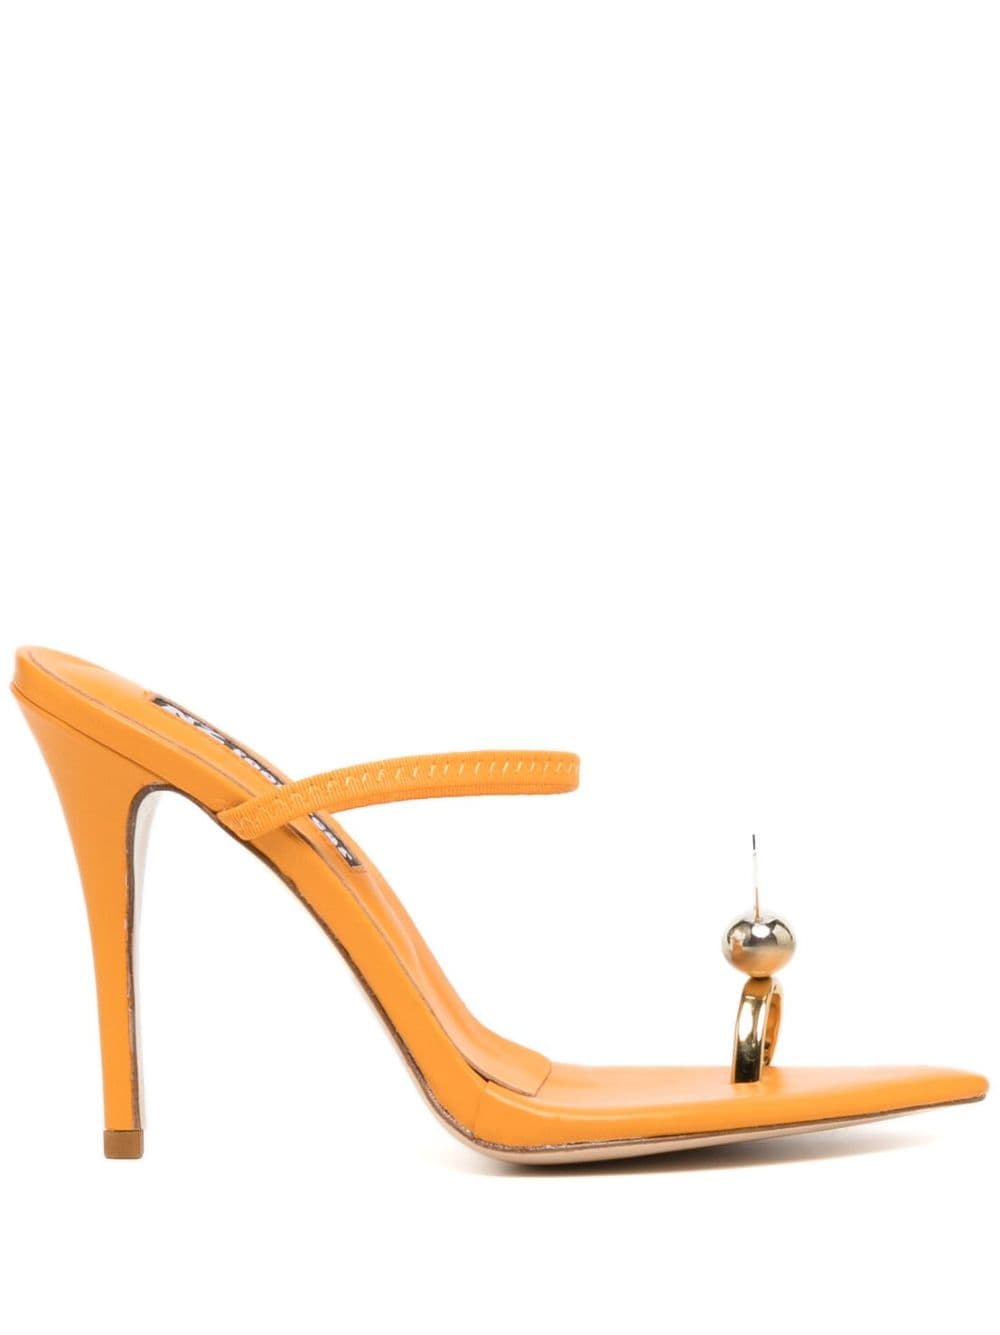 Natasha Zinko Bunny 110mm leather sandals - Orange von Natasha Zinko